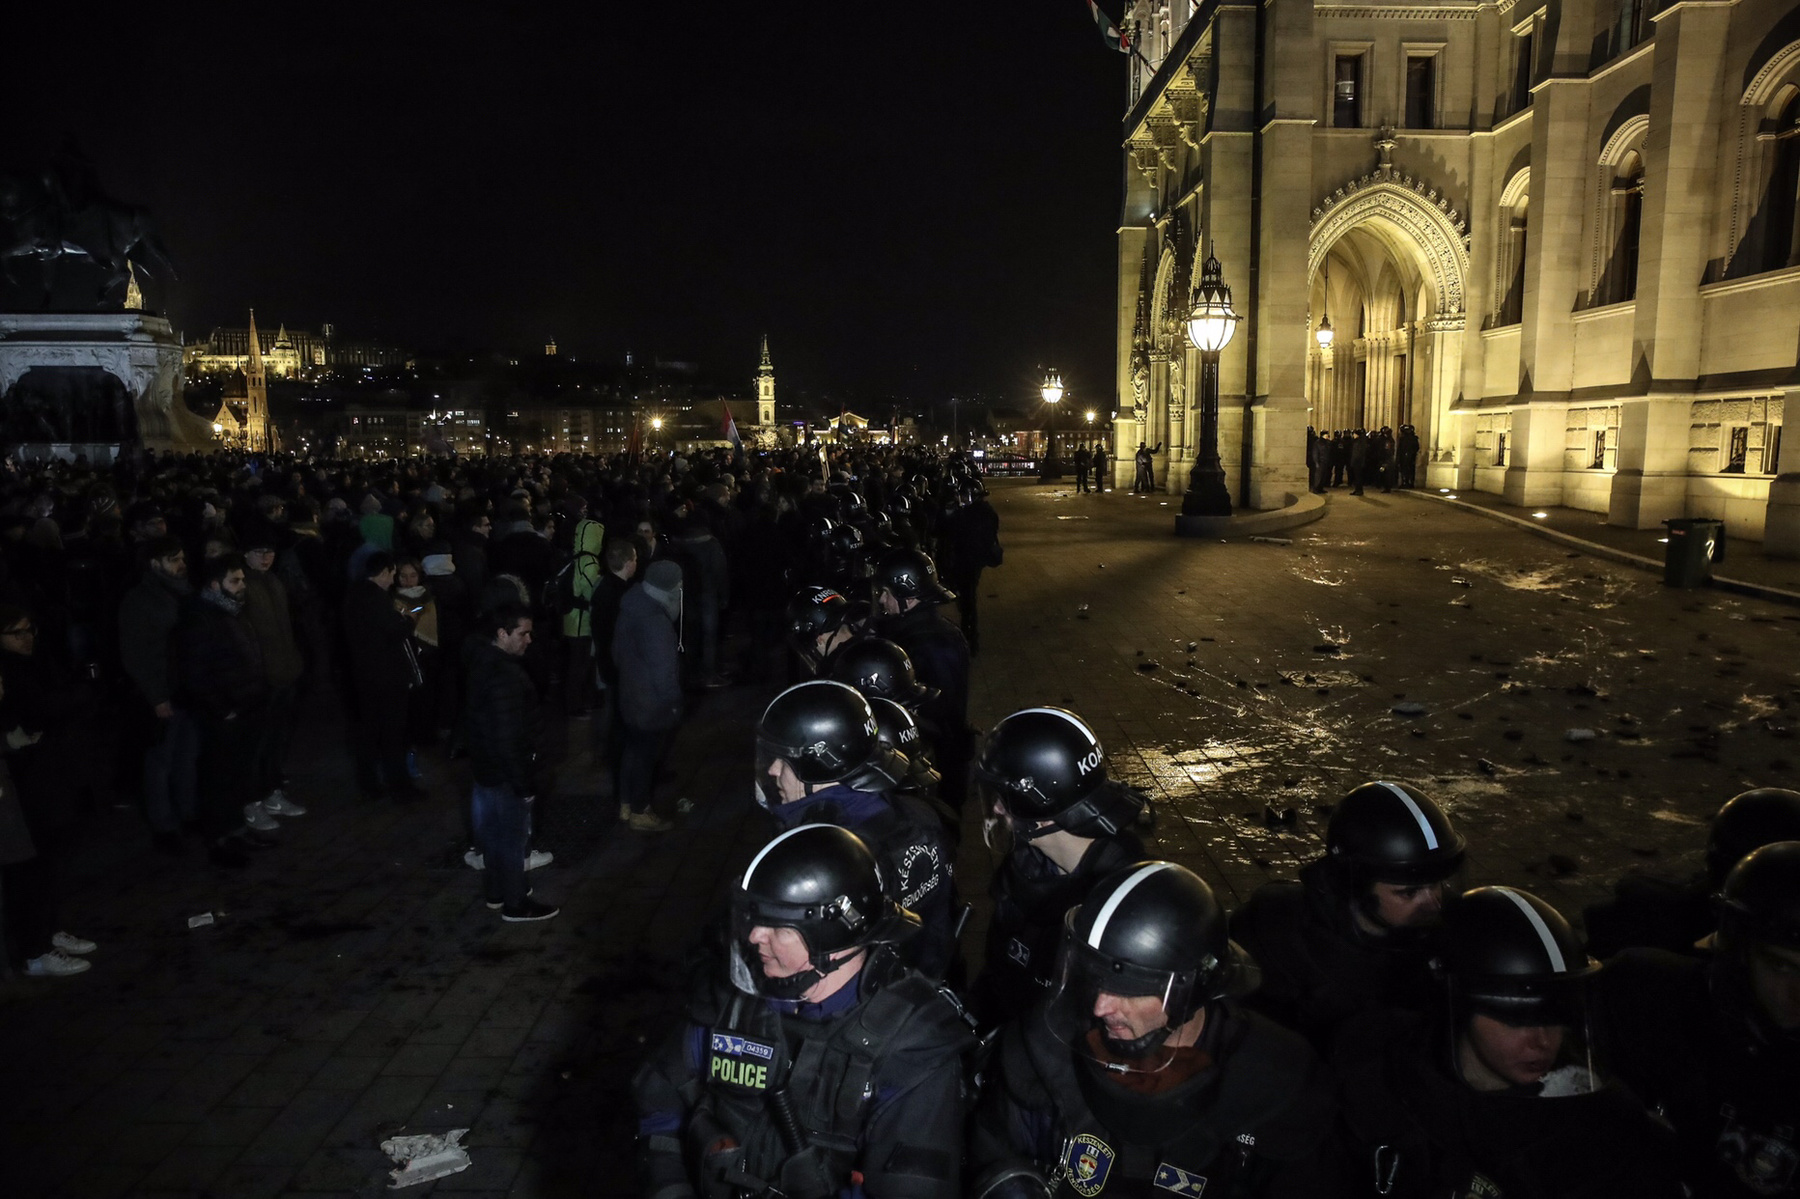 Nagyjából éjfélre a rendőrök a teret kiürítették, a tüntetők utolsó csoportját déli irányba, a Nádor utca felé terelték ki.